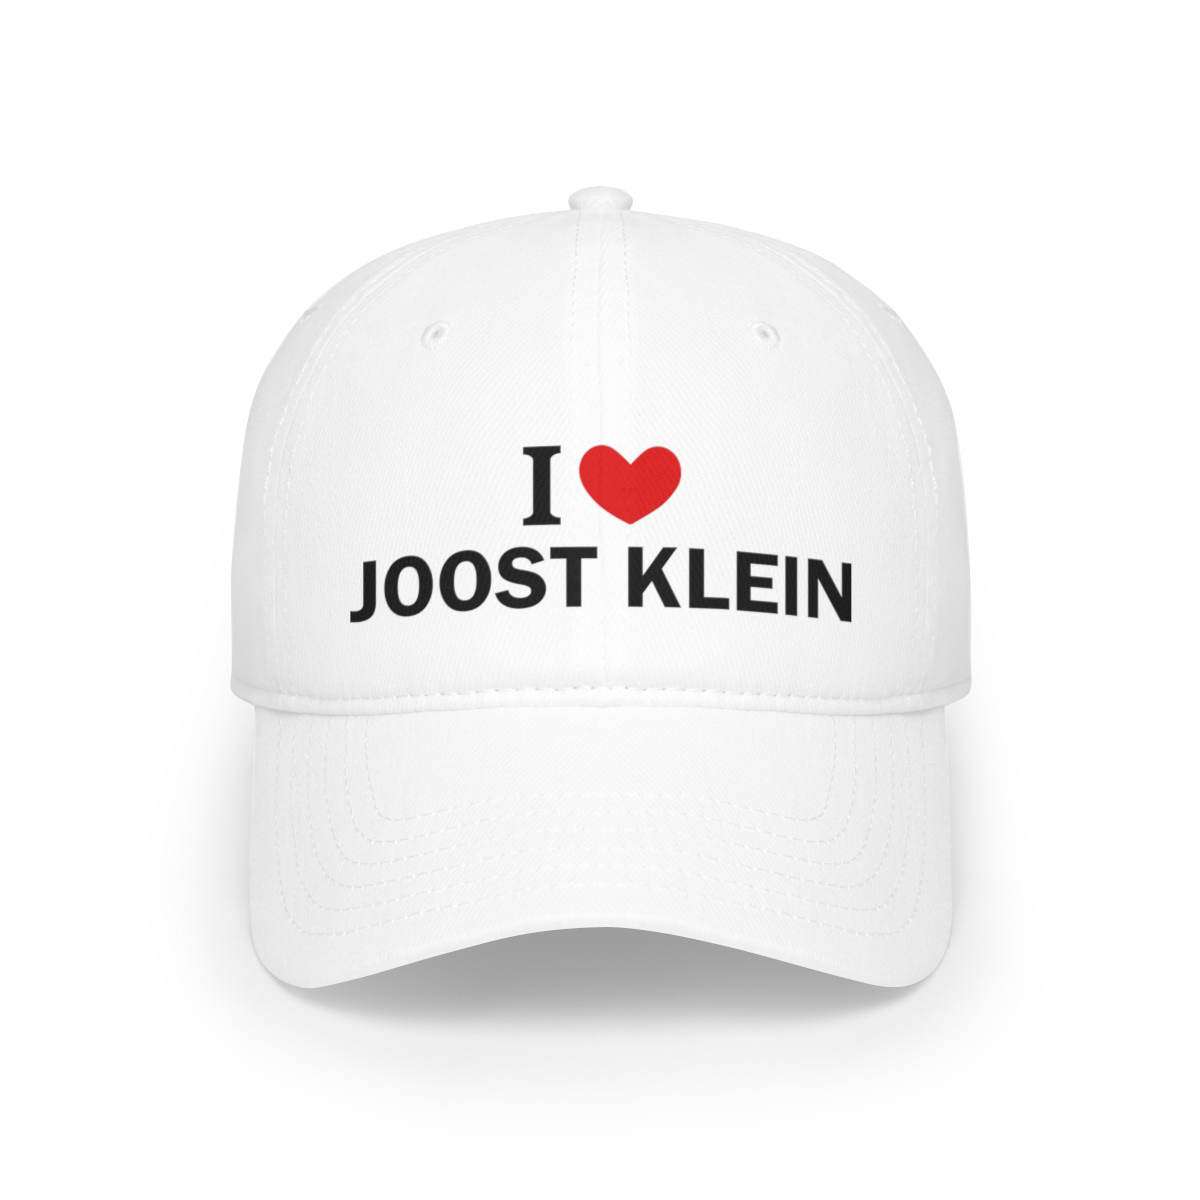 republica Election vote politics usa news biden Elections Democrat I Love Joost Klein Hat